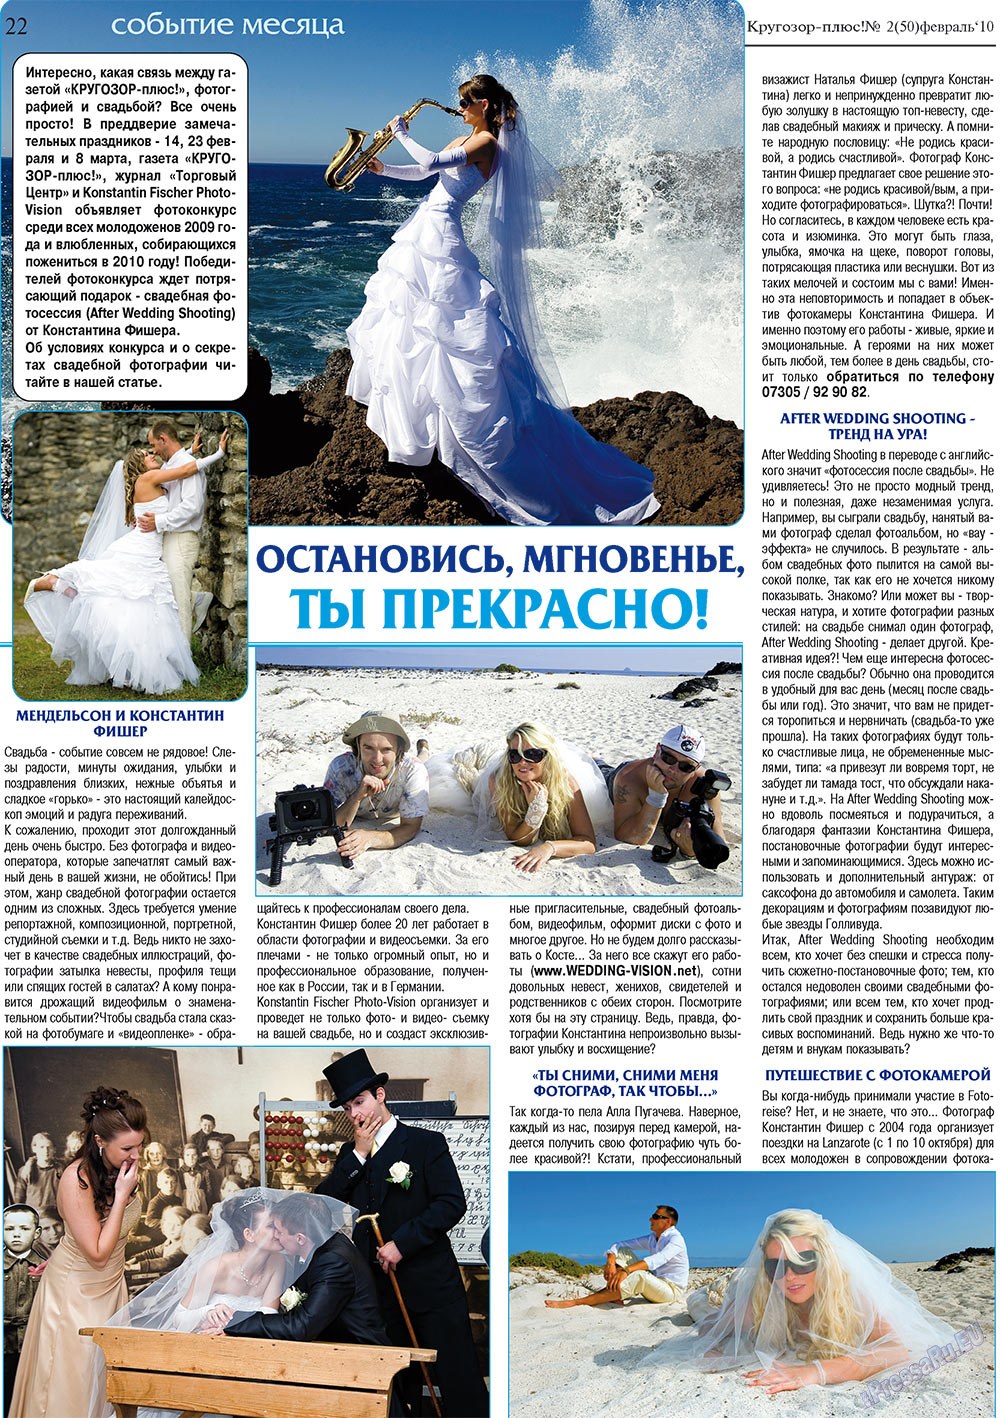 Кругозор плюс!, газета. 2010 №2 стр.22